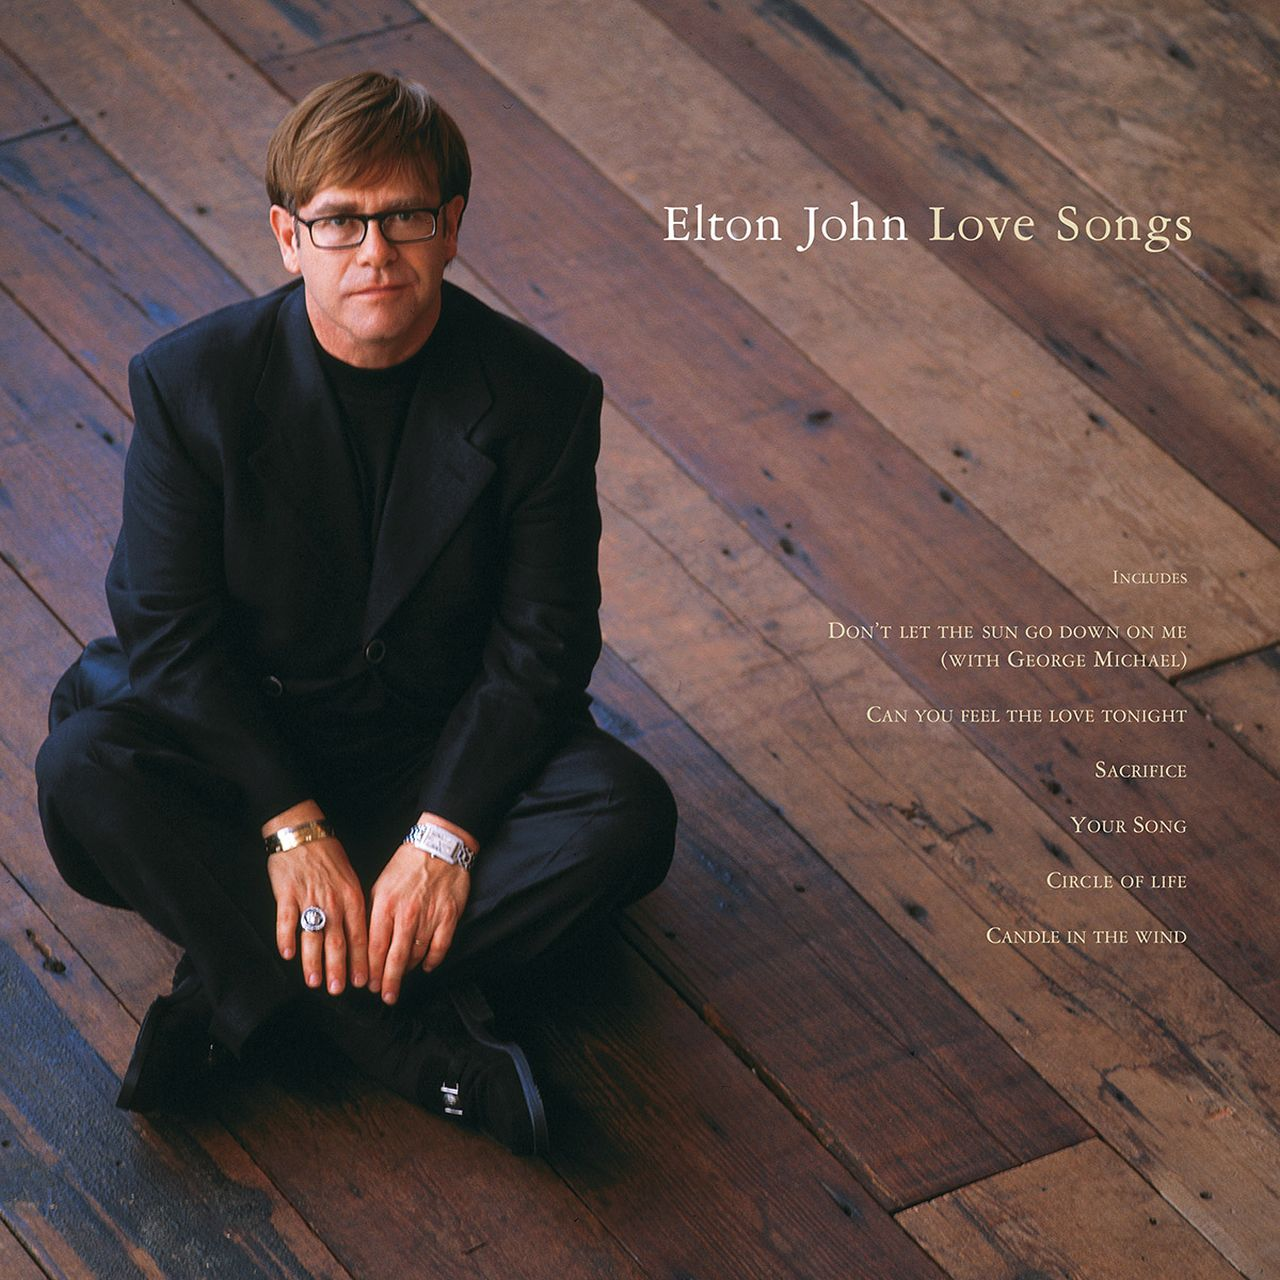 Elton John Songs - (Ltd.Remastered 2LP) Love - (Vinyl)